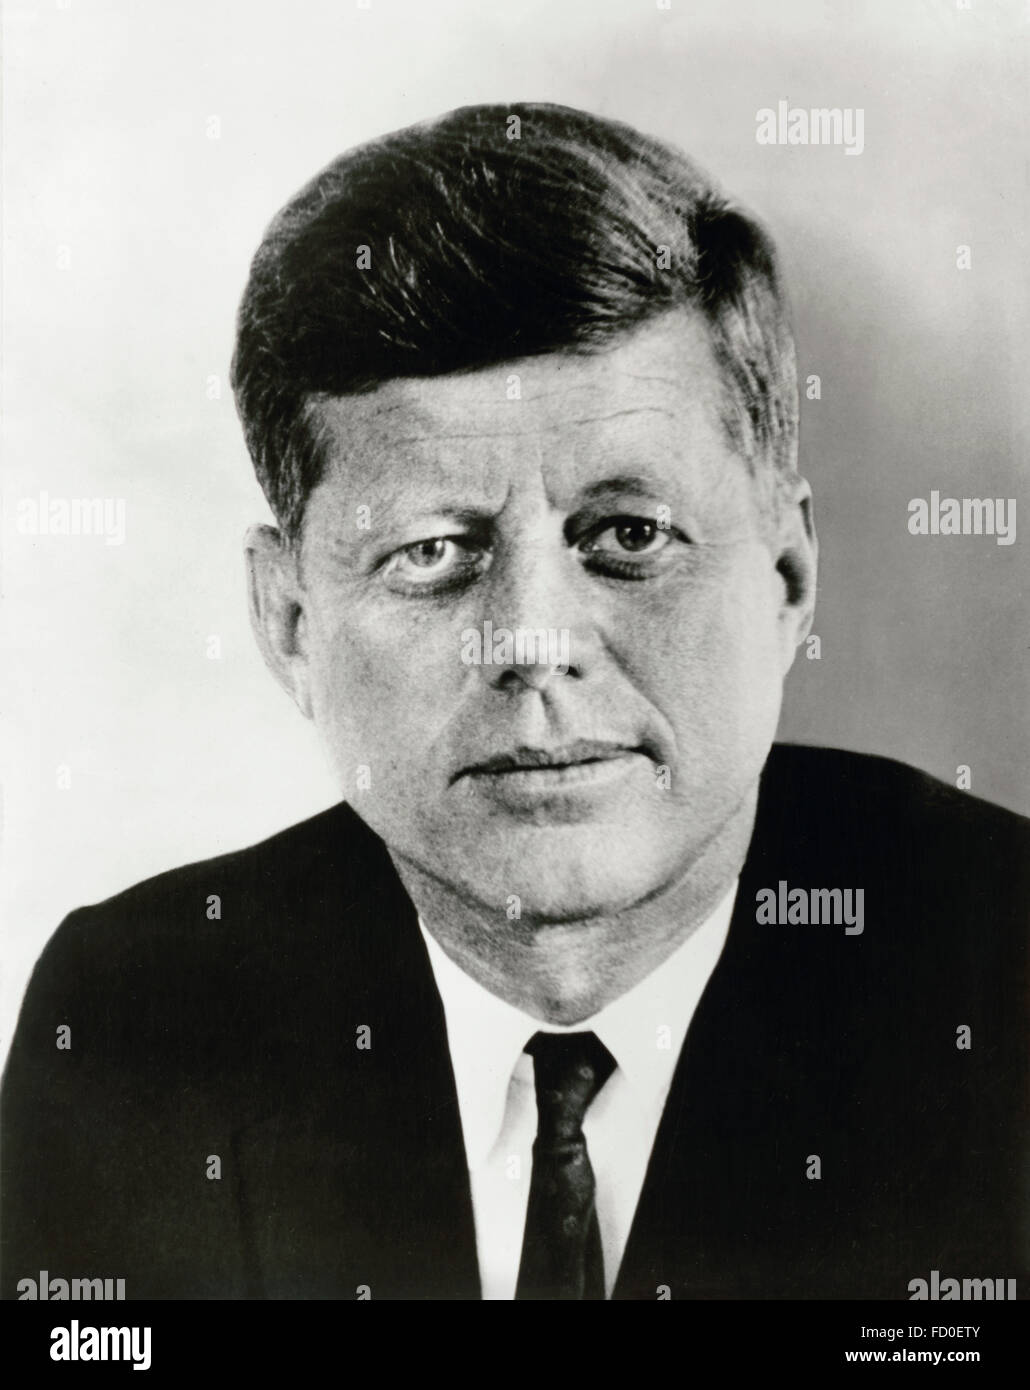 John F Kennedy, portrait du 35e président des USA, 1961 Banque D'Images